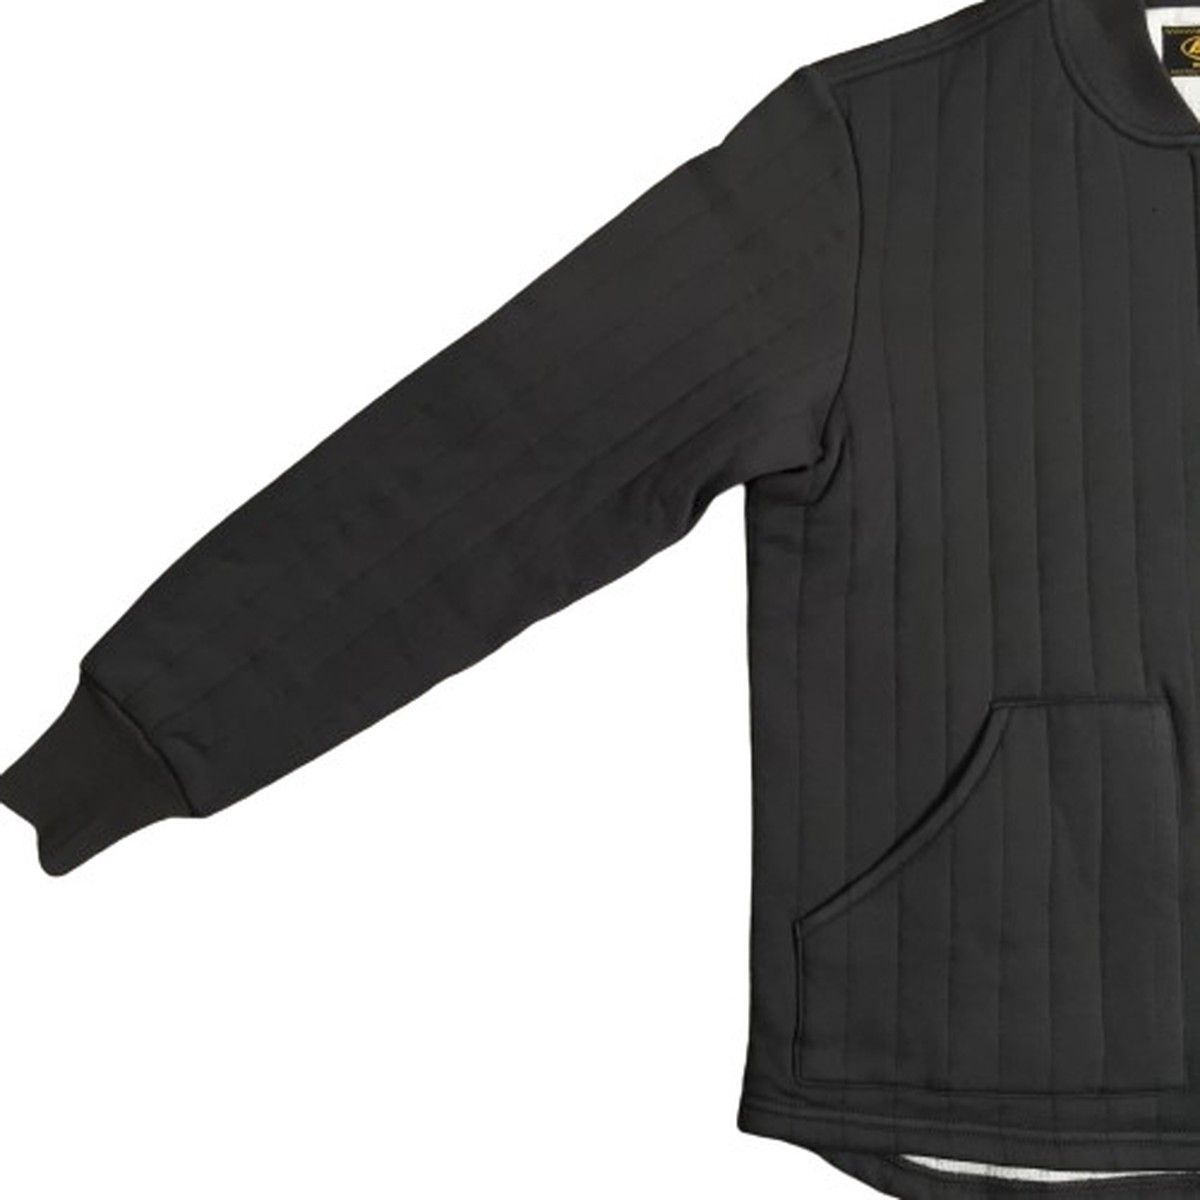 THE REAL McCOYS ナイロン キルティング スウェットシャツ BC21101 JKT ジャケット メンズ 日本製 SMALL グレー